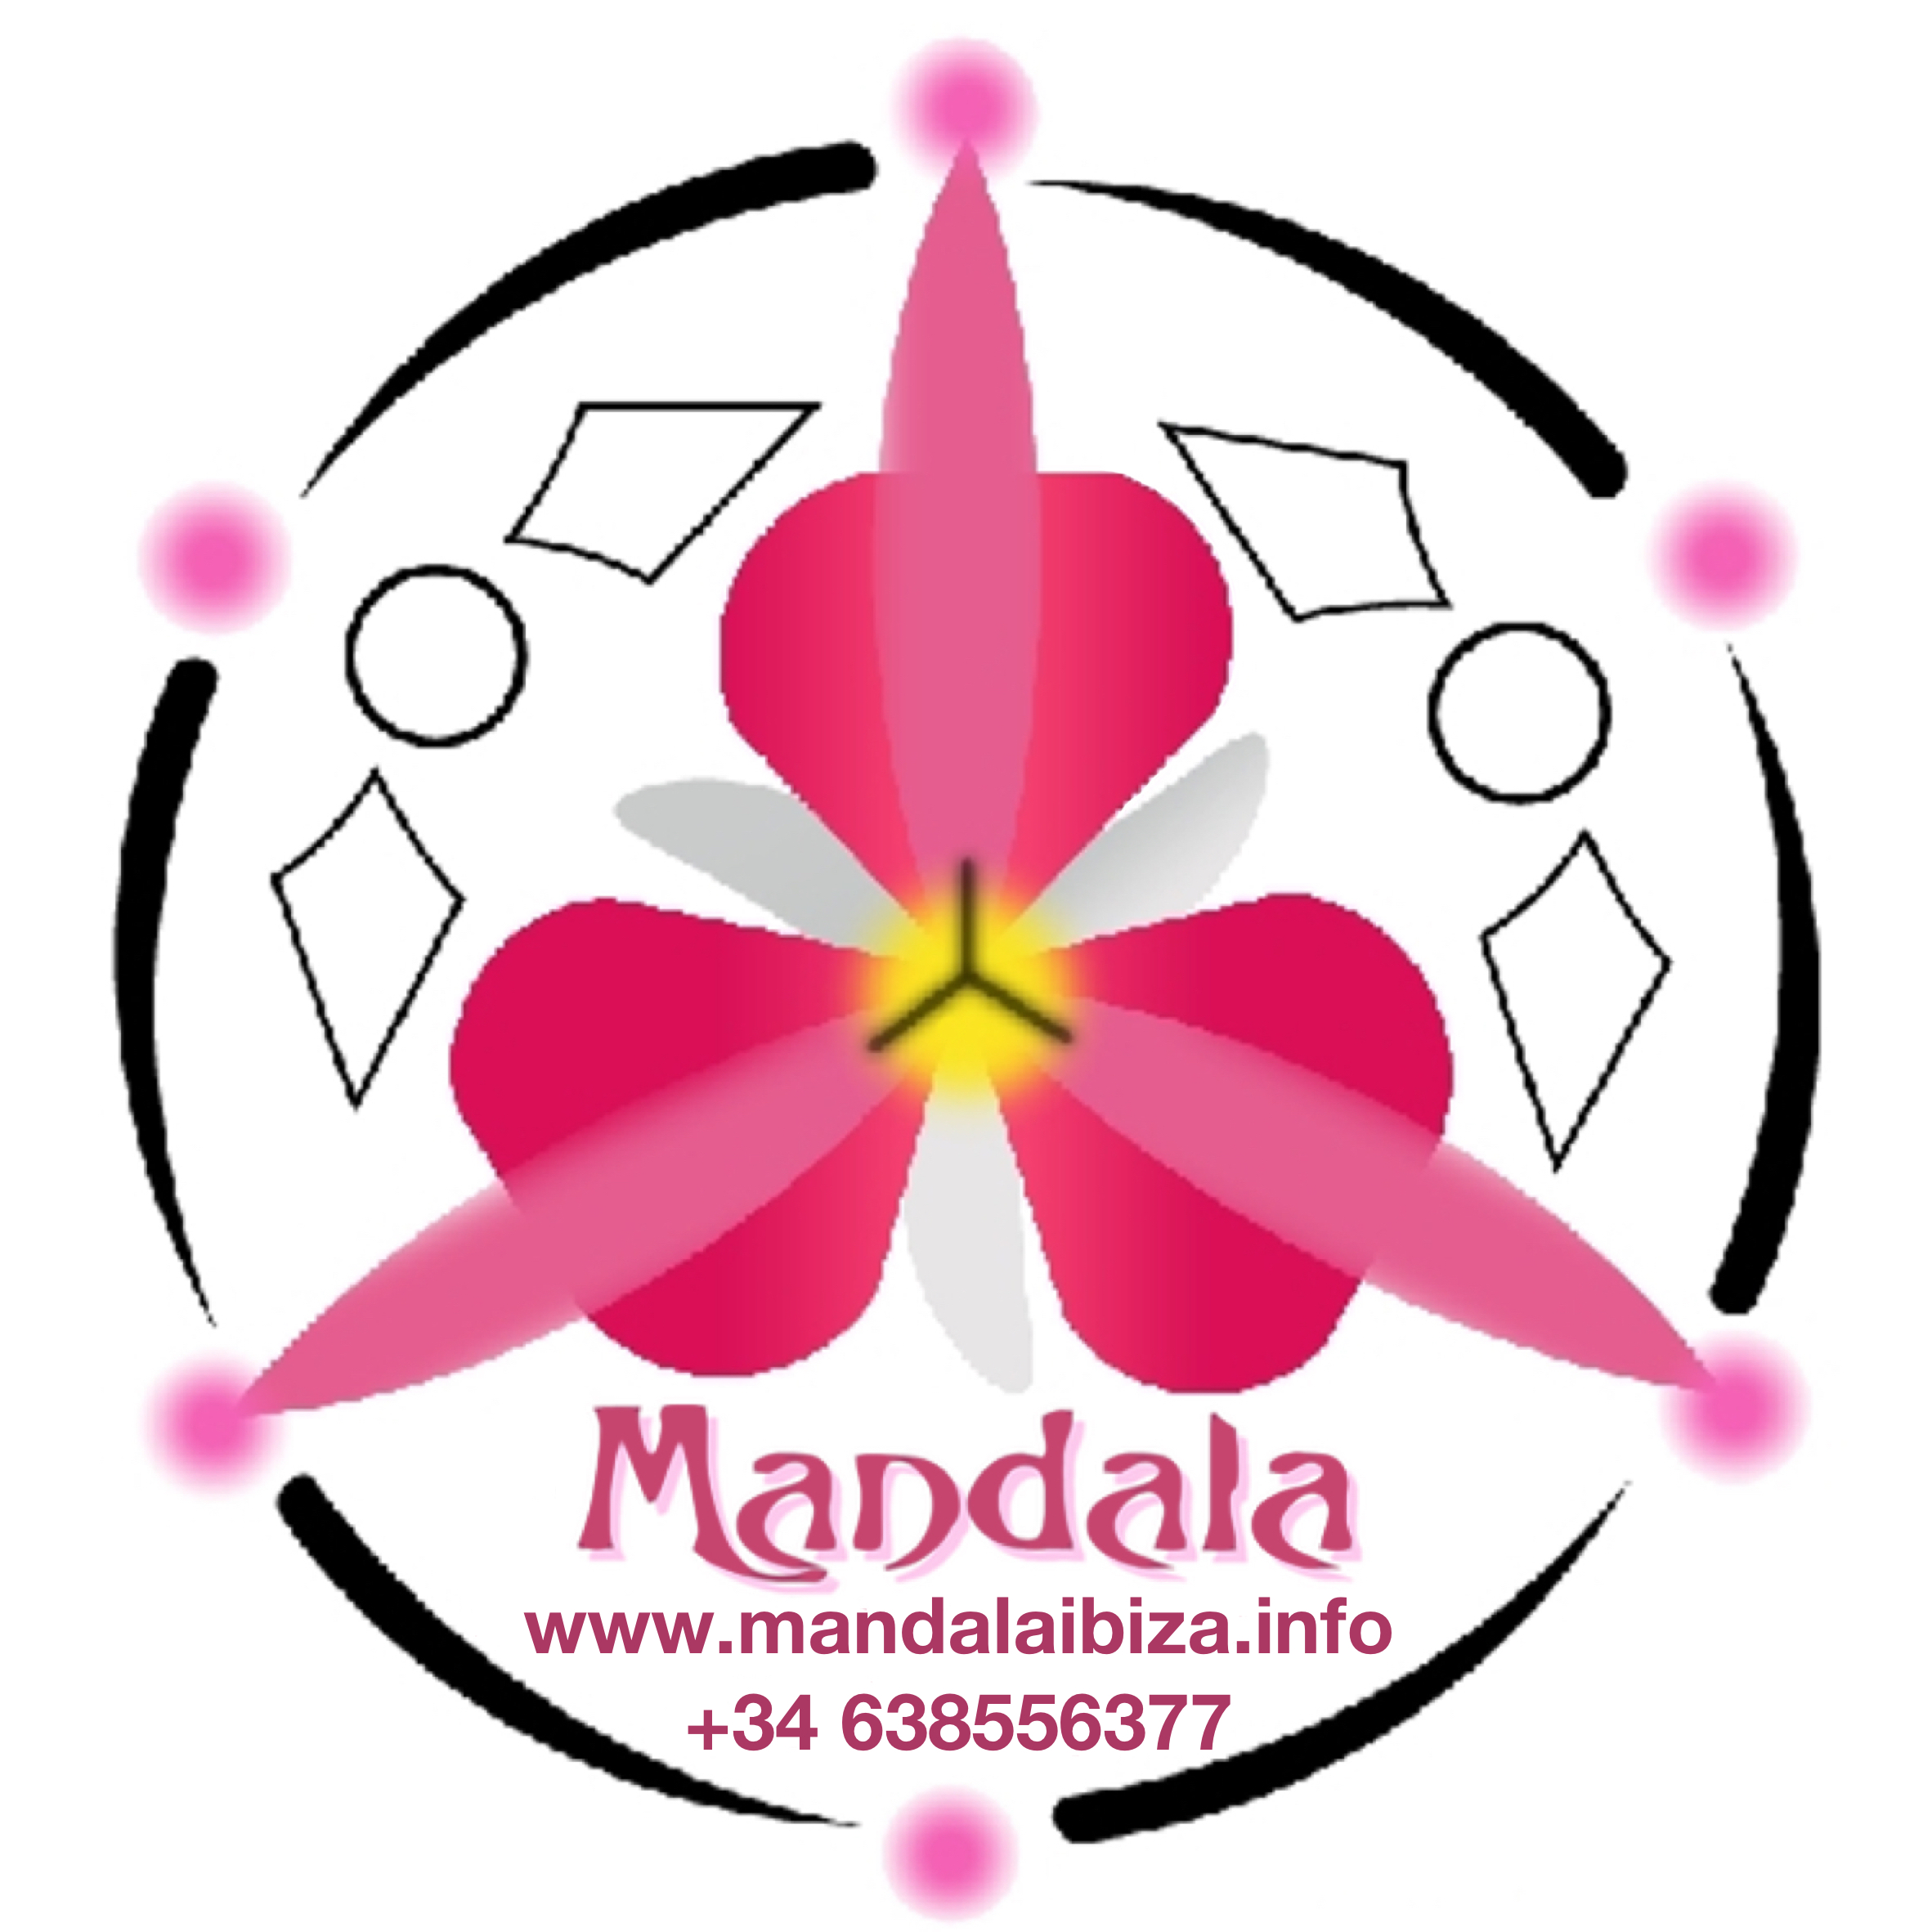 Mandala Ibiza